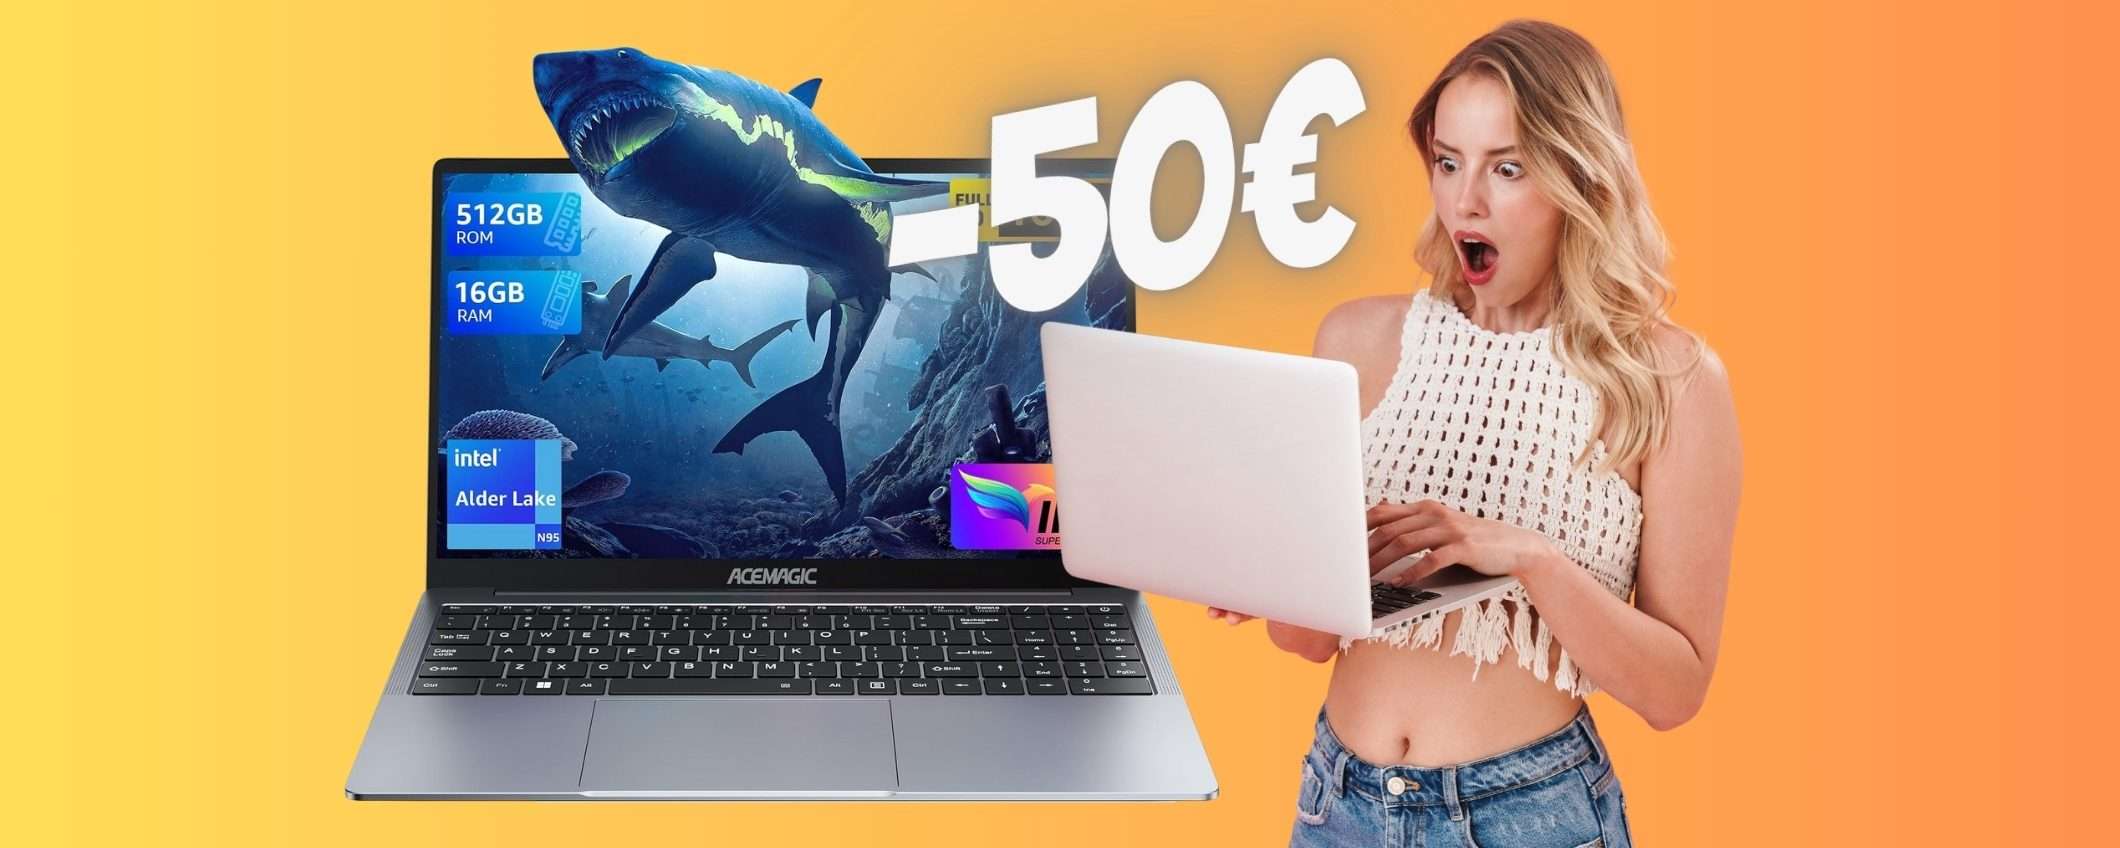 SCONTO di 50€ per questo POTENTE computer portatile da prendere ADESSO